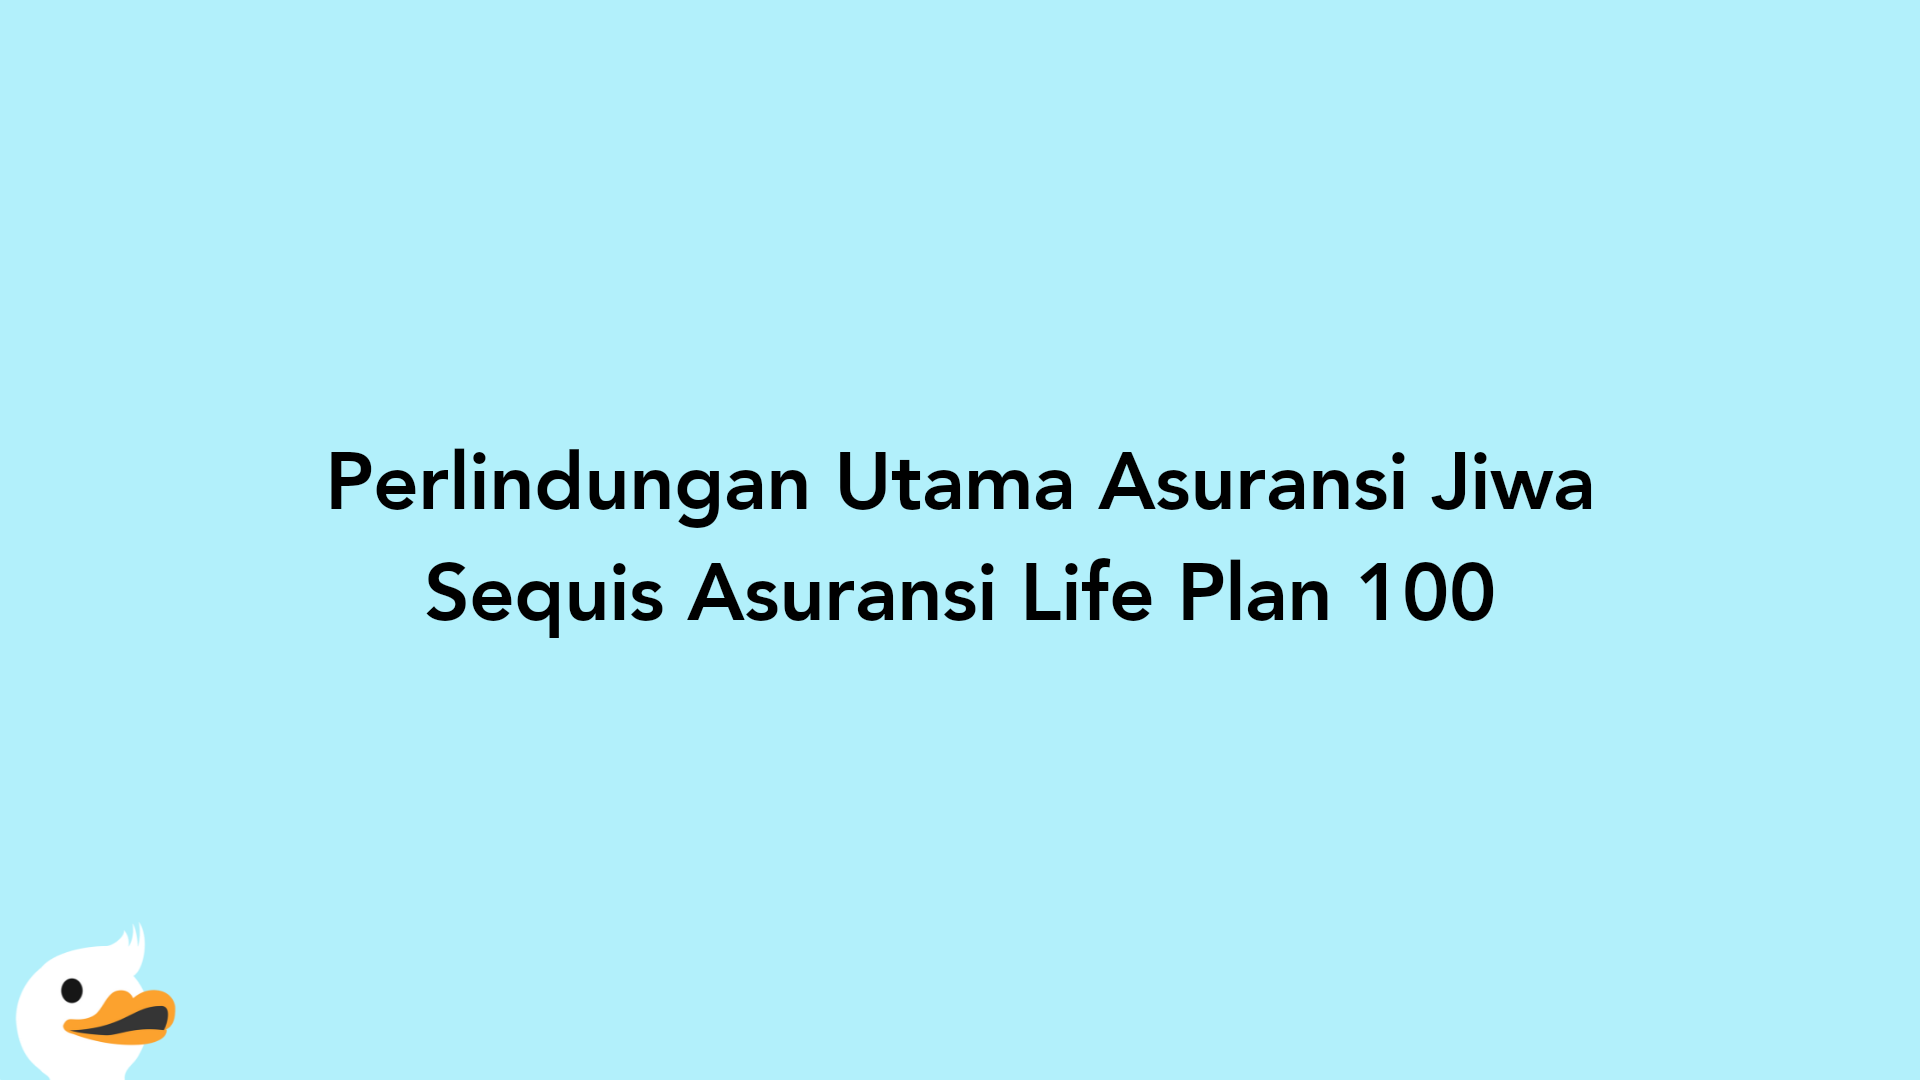 Perlindungan Utama Asuransi Jiwa Sequis Asuransi Life Plan 100